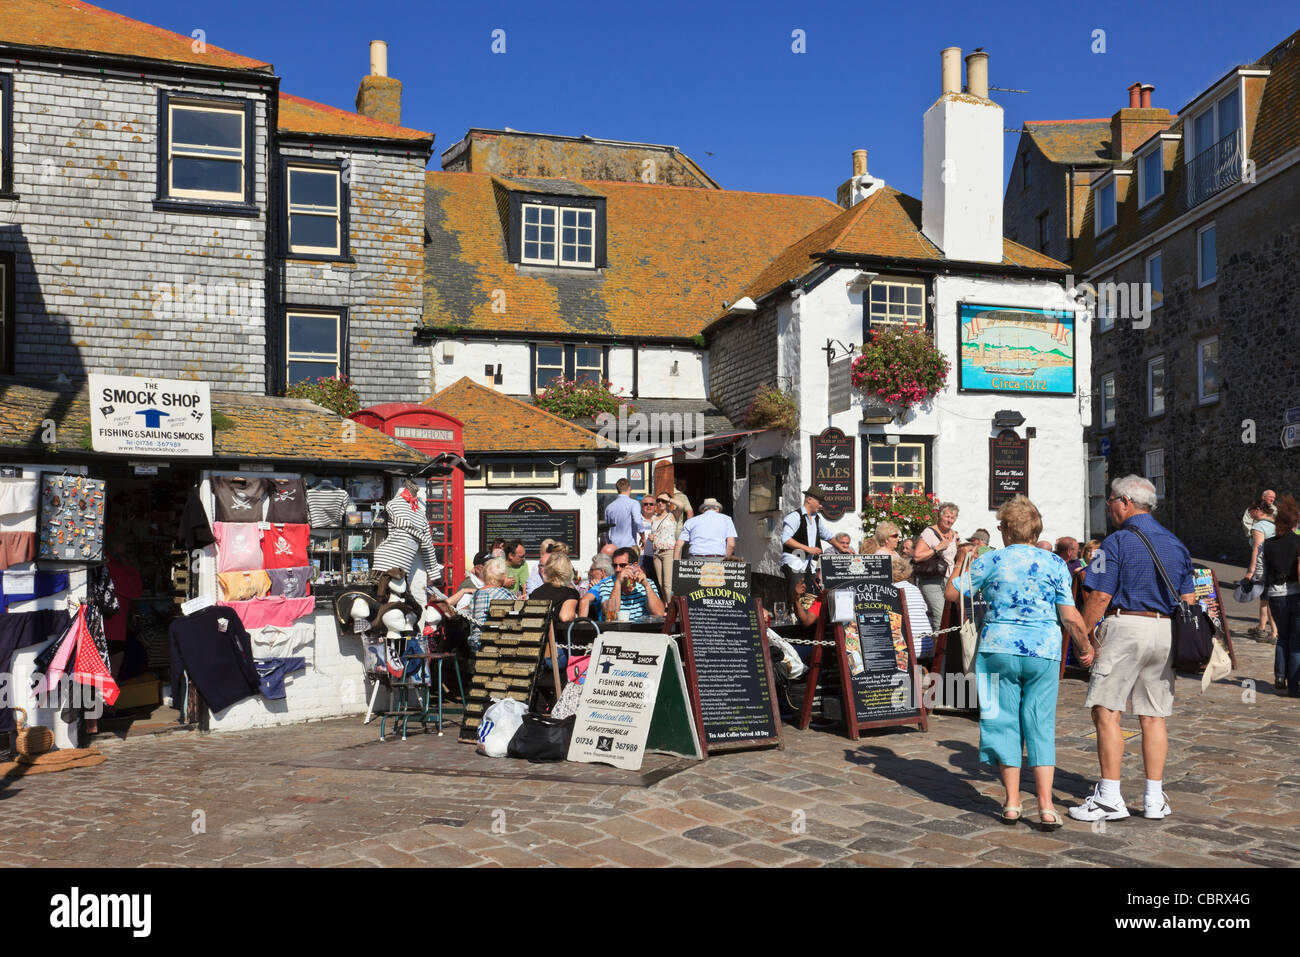 Le Sloop Inn traditionnel pub du XIVe siècle est animé par les visiteurs qui s'assècent dehors dans un café en plein air. St Ives, Cornouailles, Angleterre, Royaume-Uni, Grande-Bretagne Banque D'Images